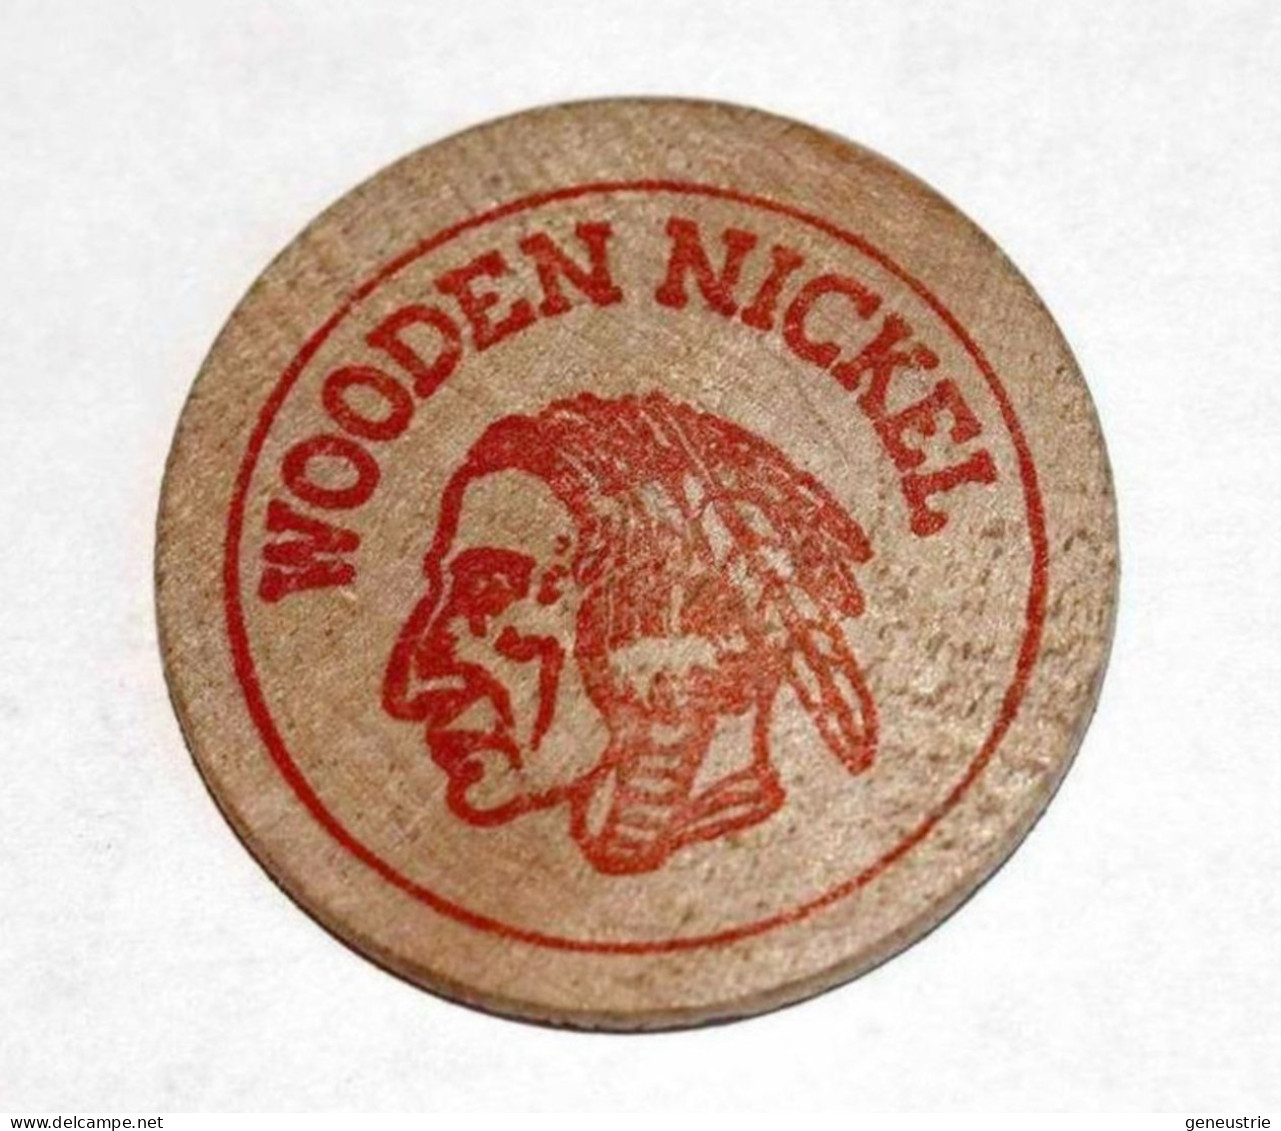 Wooden Nickel - Jeton Bois 1979 Monnaie Tête D'Indien - The Cola Clan Houston - Coca Cola - Etats-Unis - Wooden Token - Monétaires/De Nécessité